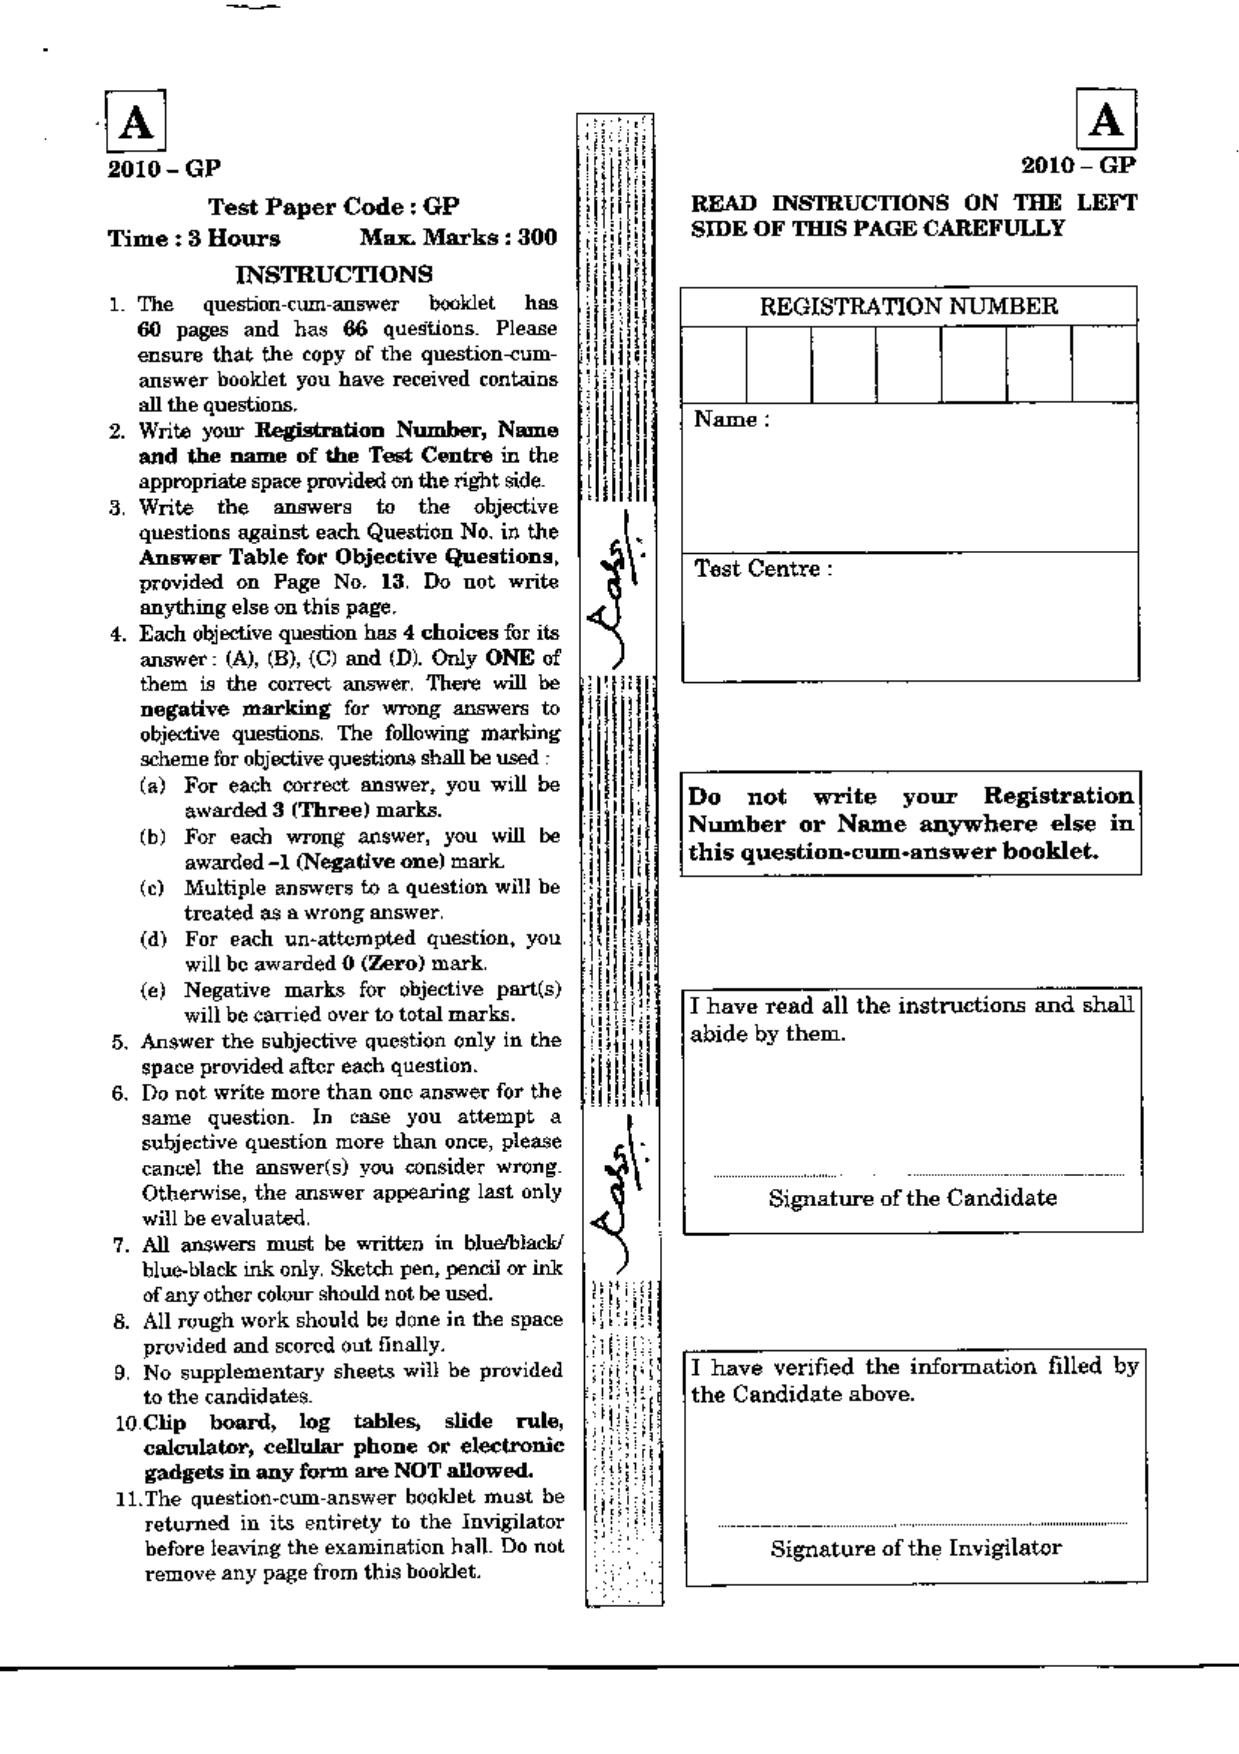 JAM 2010: GP Question Paper - Page 1